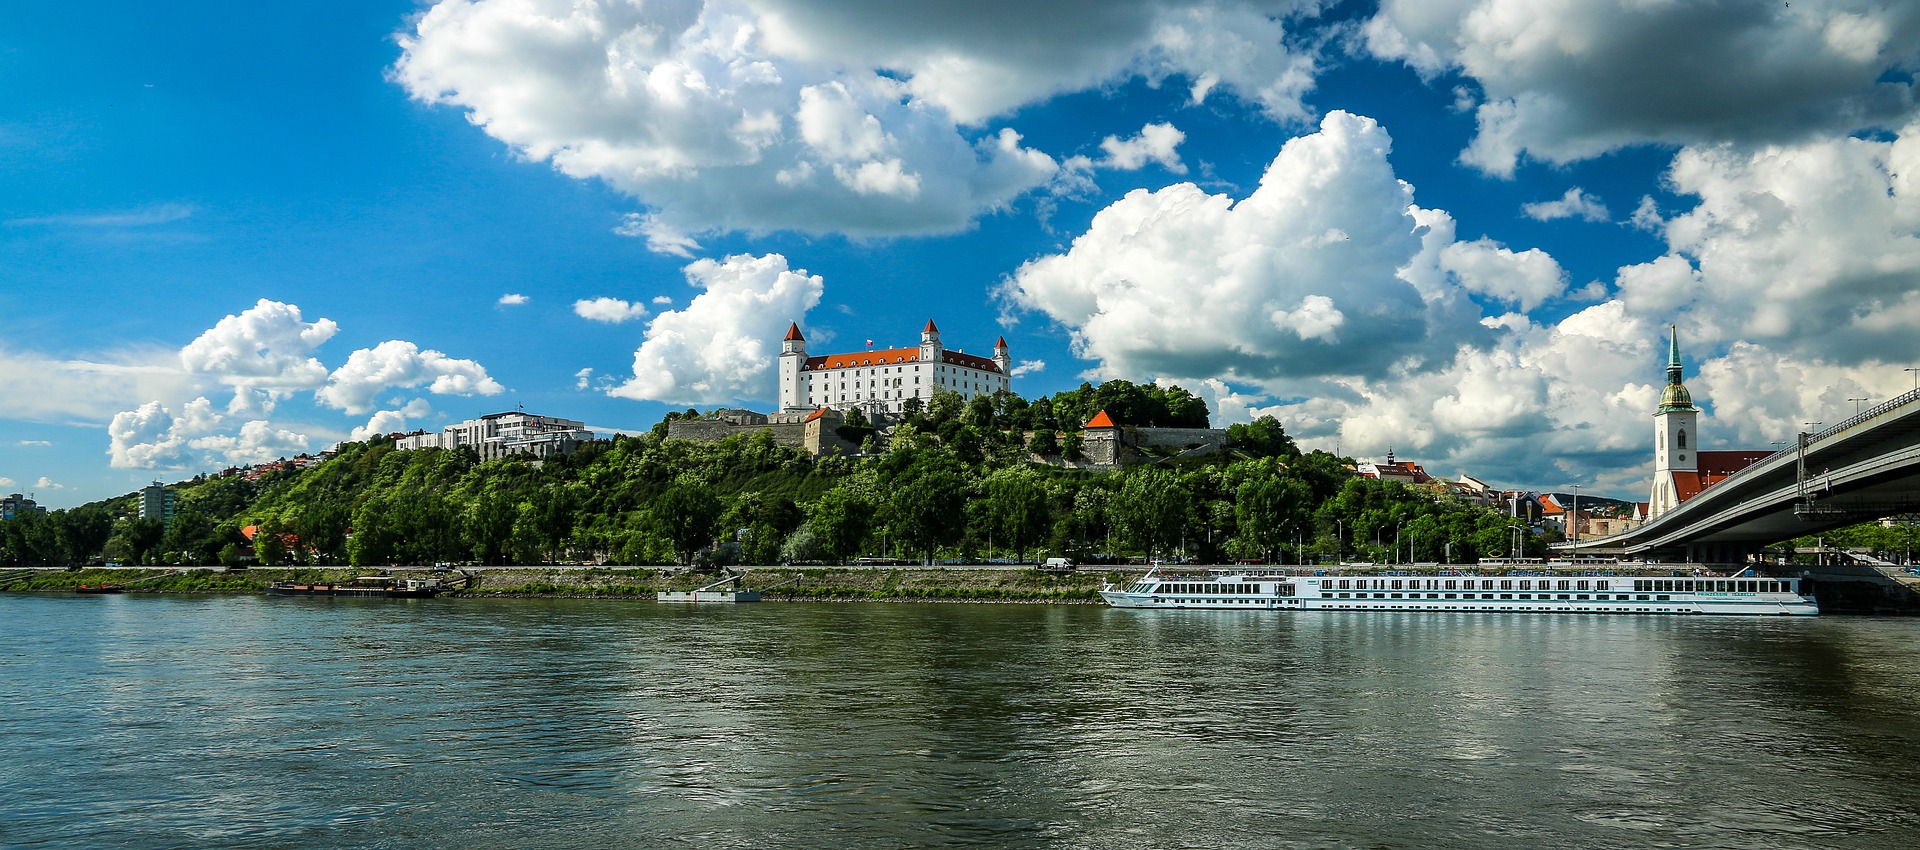 Le pape François a effectué une visite en Slovaquie du 12 au 15 septembre 2021 | photo: le château de Bratislava © Dzoko Stach/Pixabay